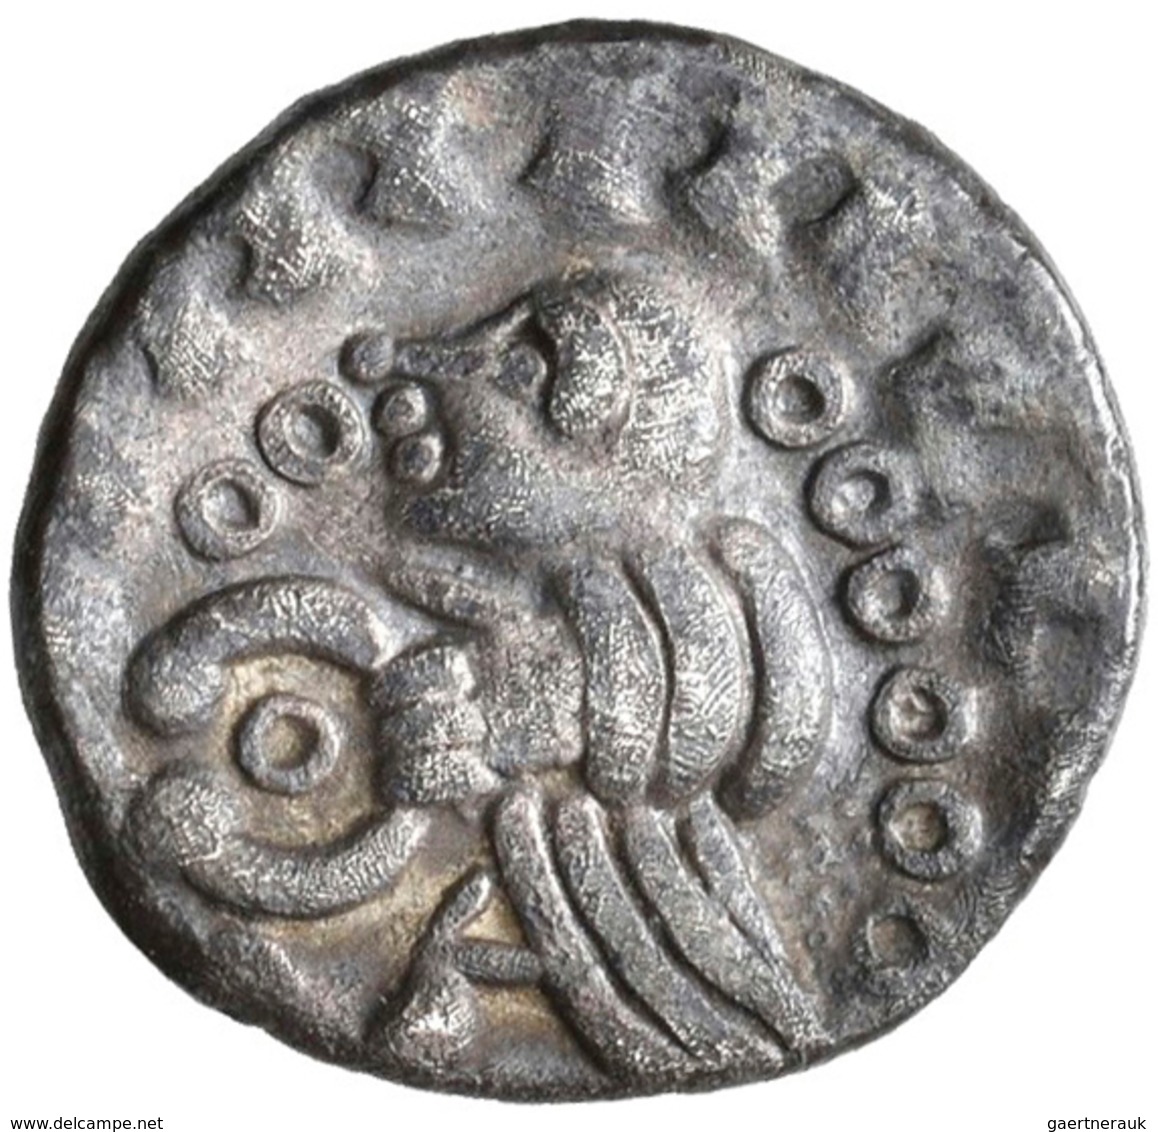 Rheinregion: Lot 6 Quinare, Typ Nahheim, 1. Jahrhundert v. Chr., sehr schön, sehr schön-vorzüglich,